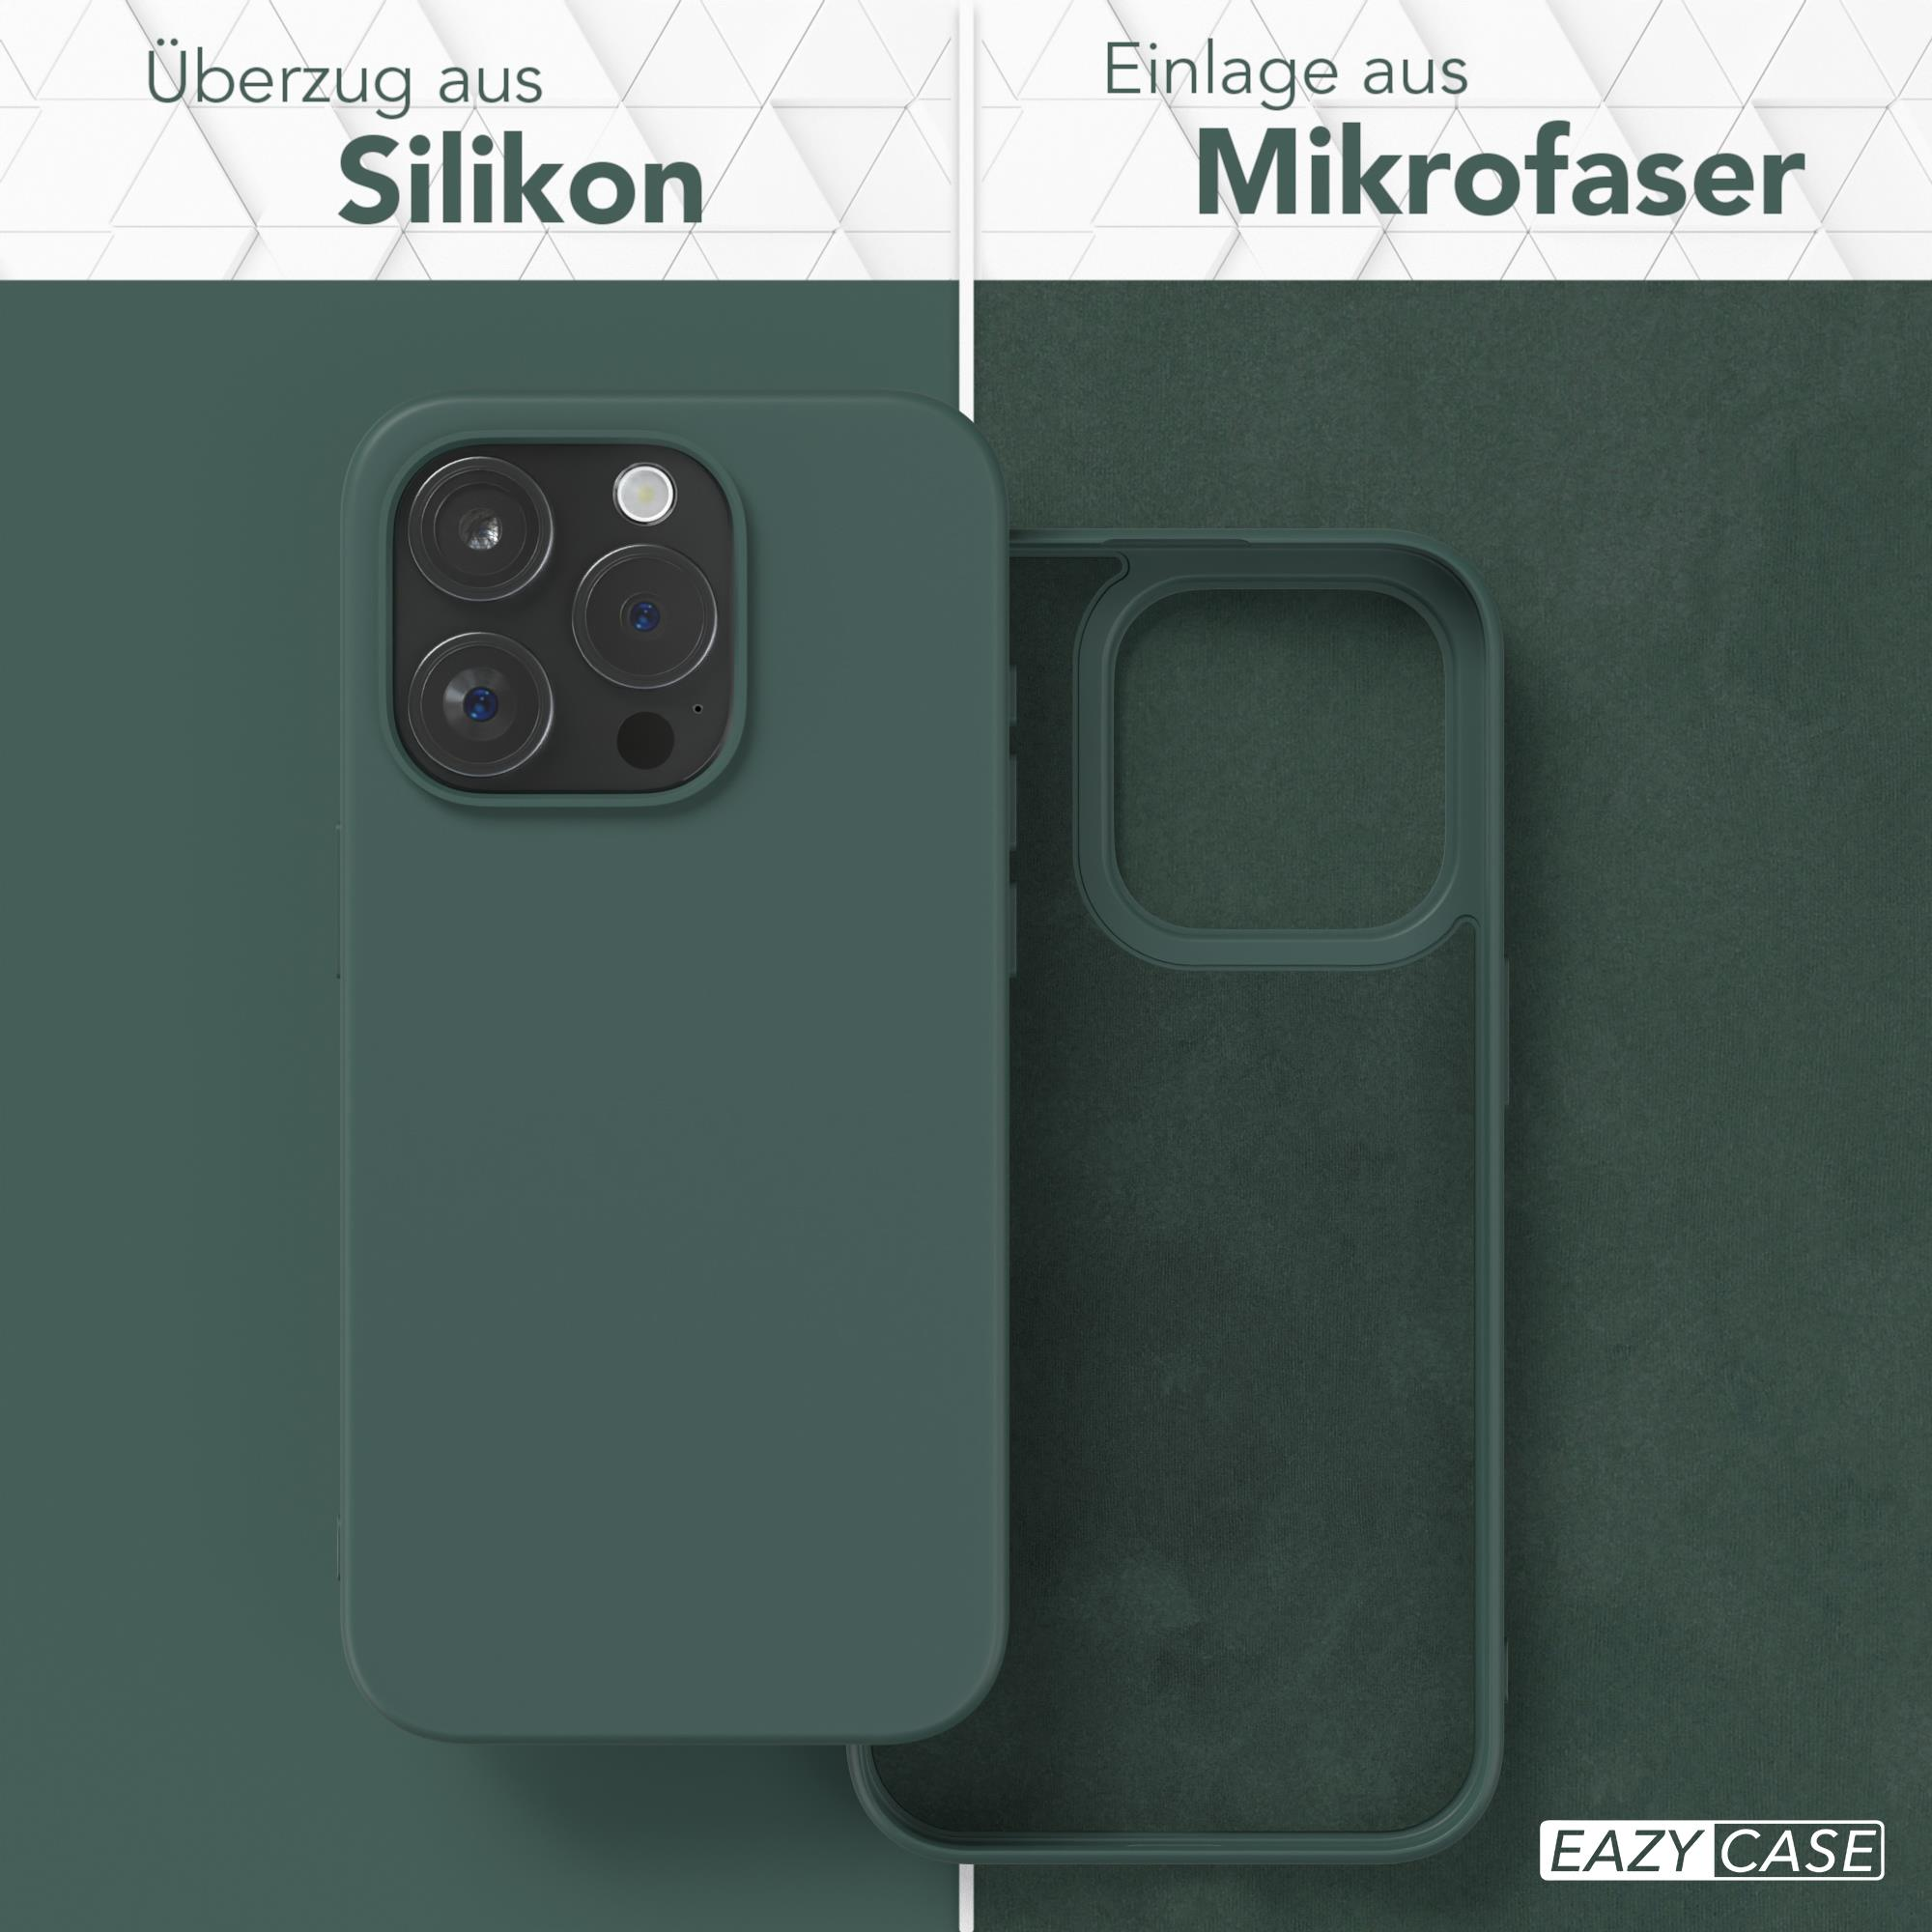 EAZY CASE iPhone Pro, Backcover, Grün 15 / Silikon Matt, TPU Apple, Handycase Nachtgrün